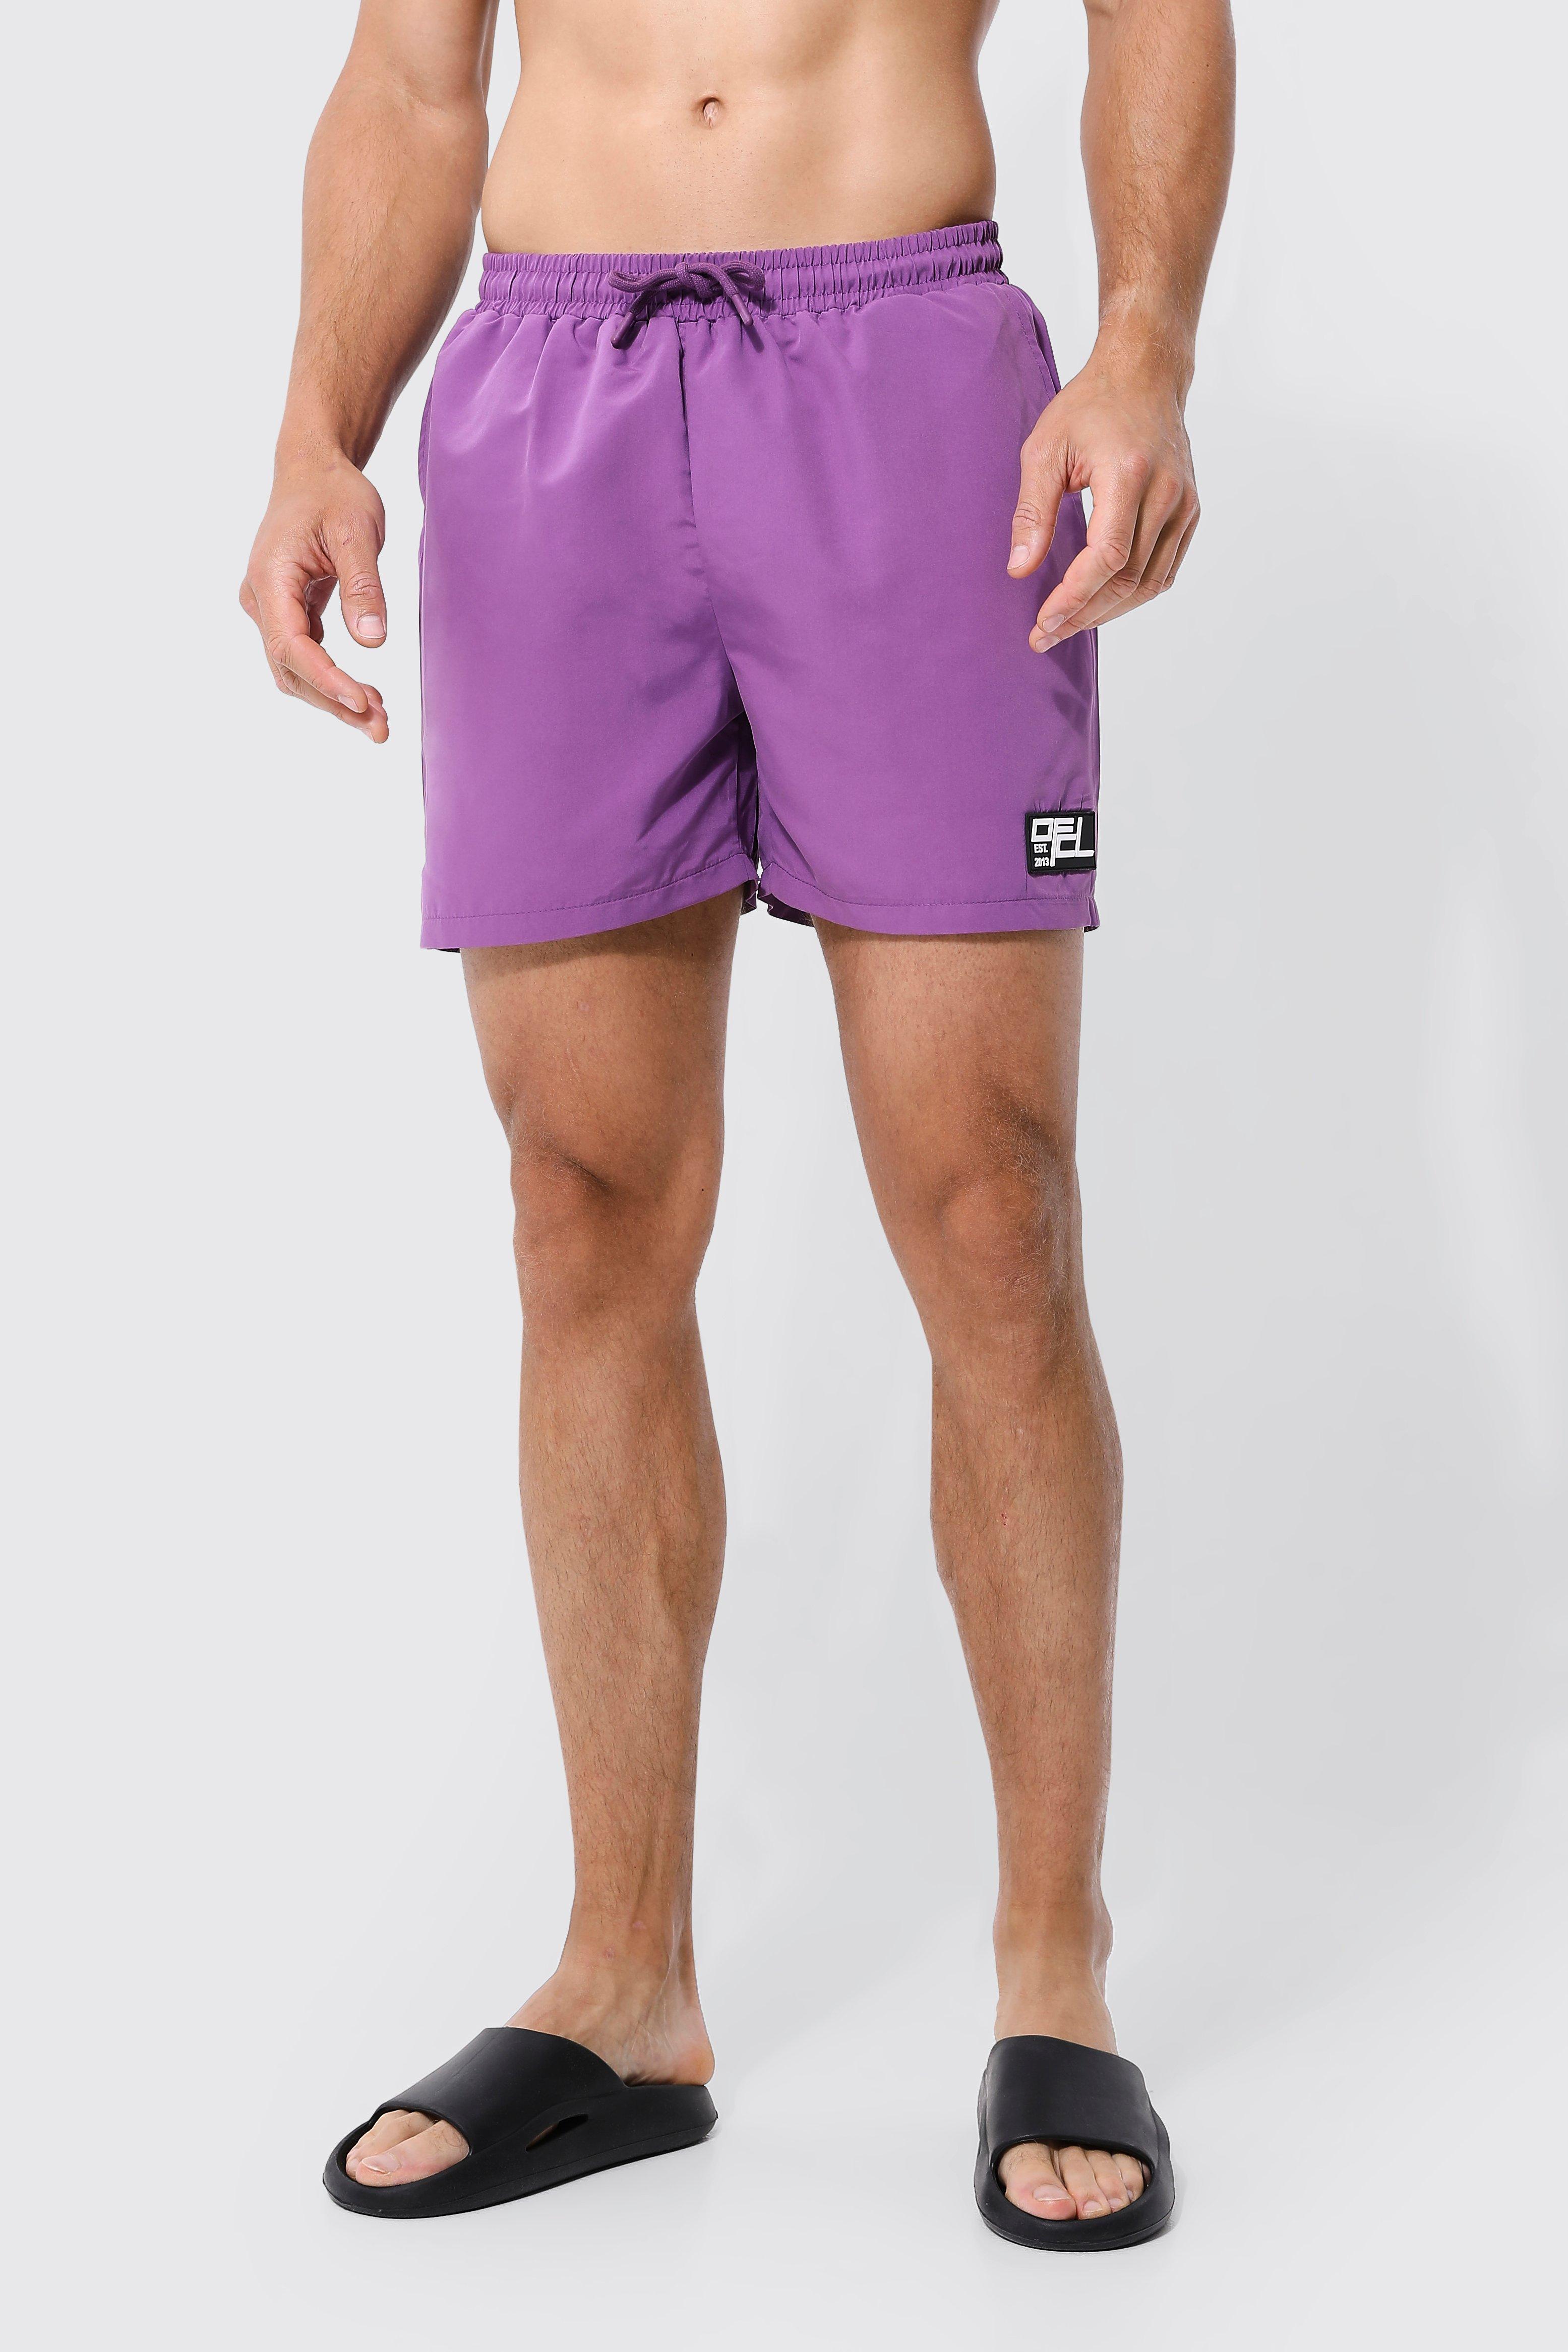 tall - short de bain court à étiquette en caoutchouc homme - violet - l, violet